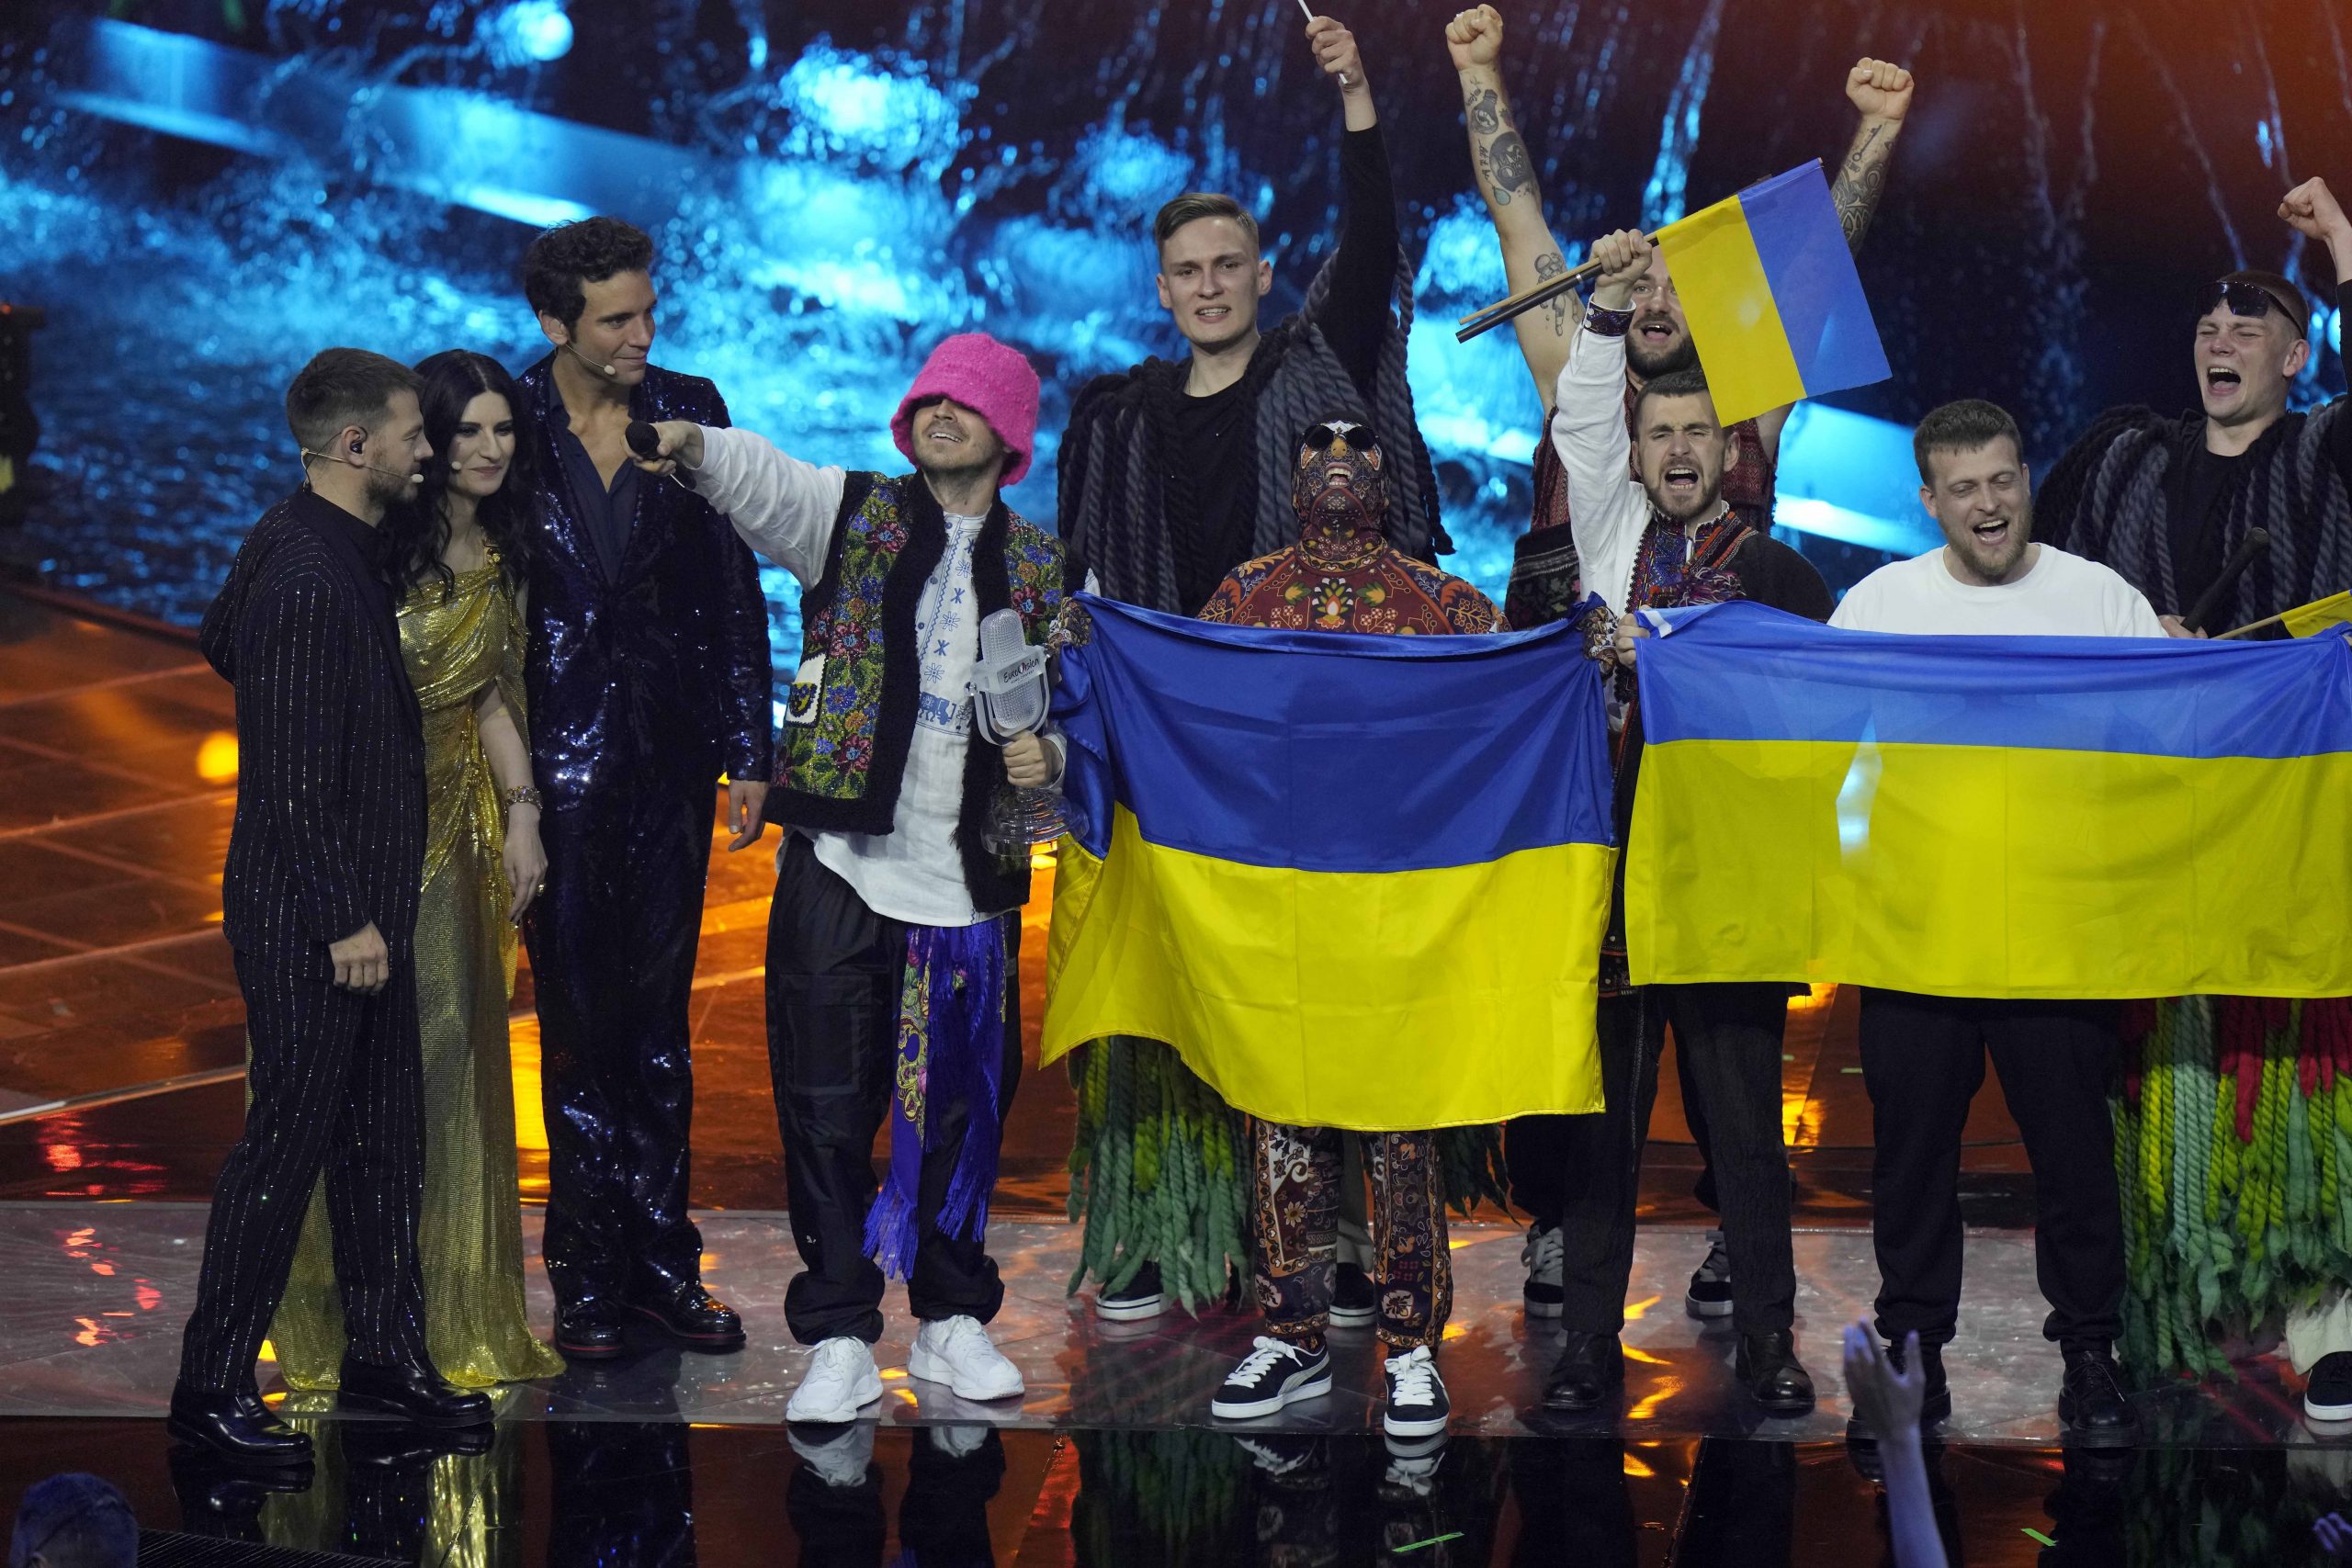 反战声势声援 乌克兰夺欧洲歌唱大赛冠军